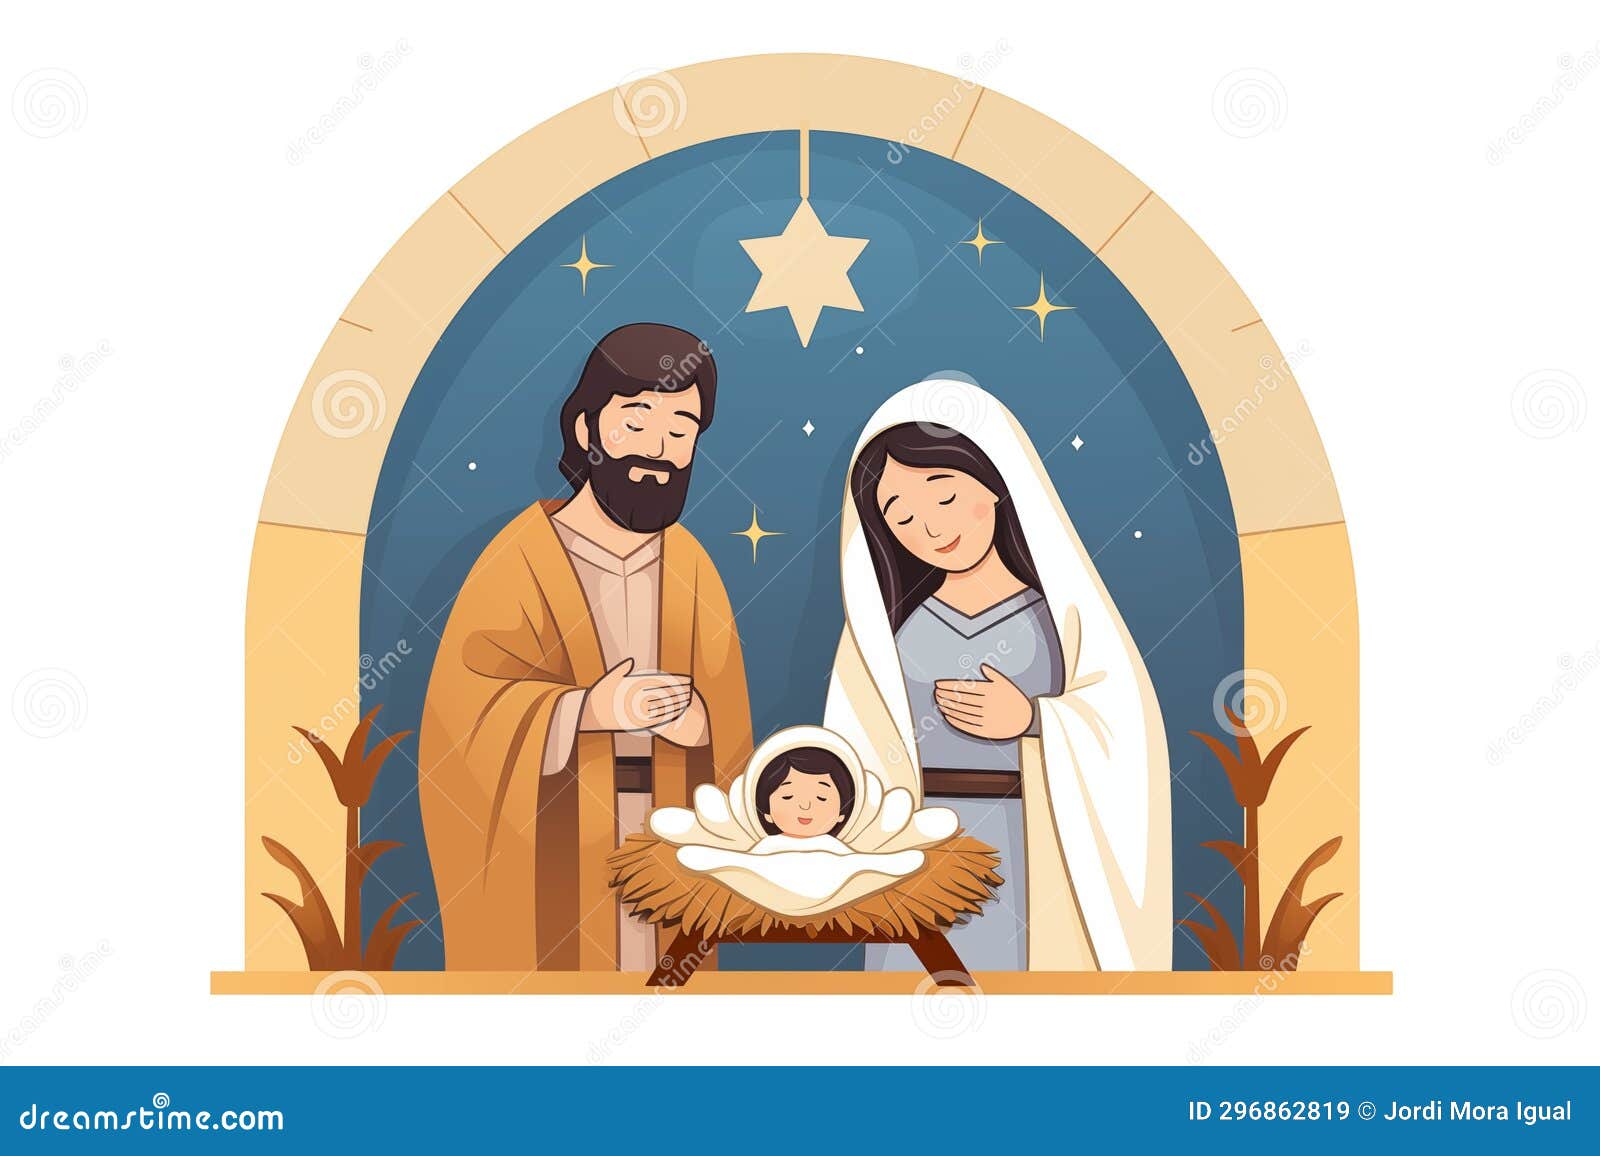 15,695 Nacimiento De Jesus Stock Vectors and Vector Art | Shutterstock